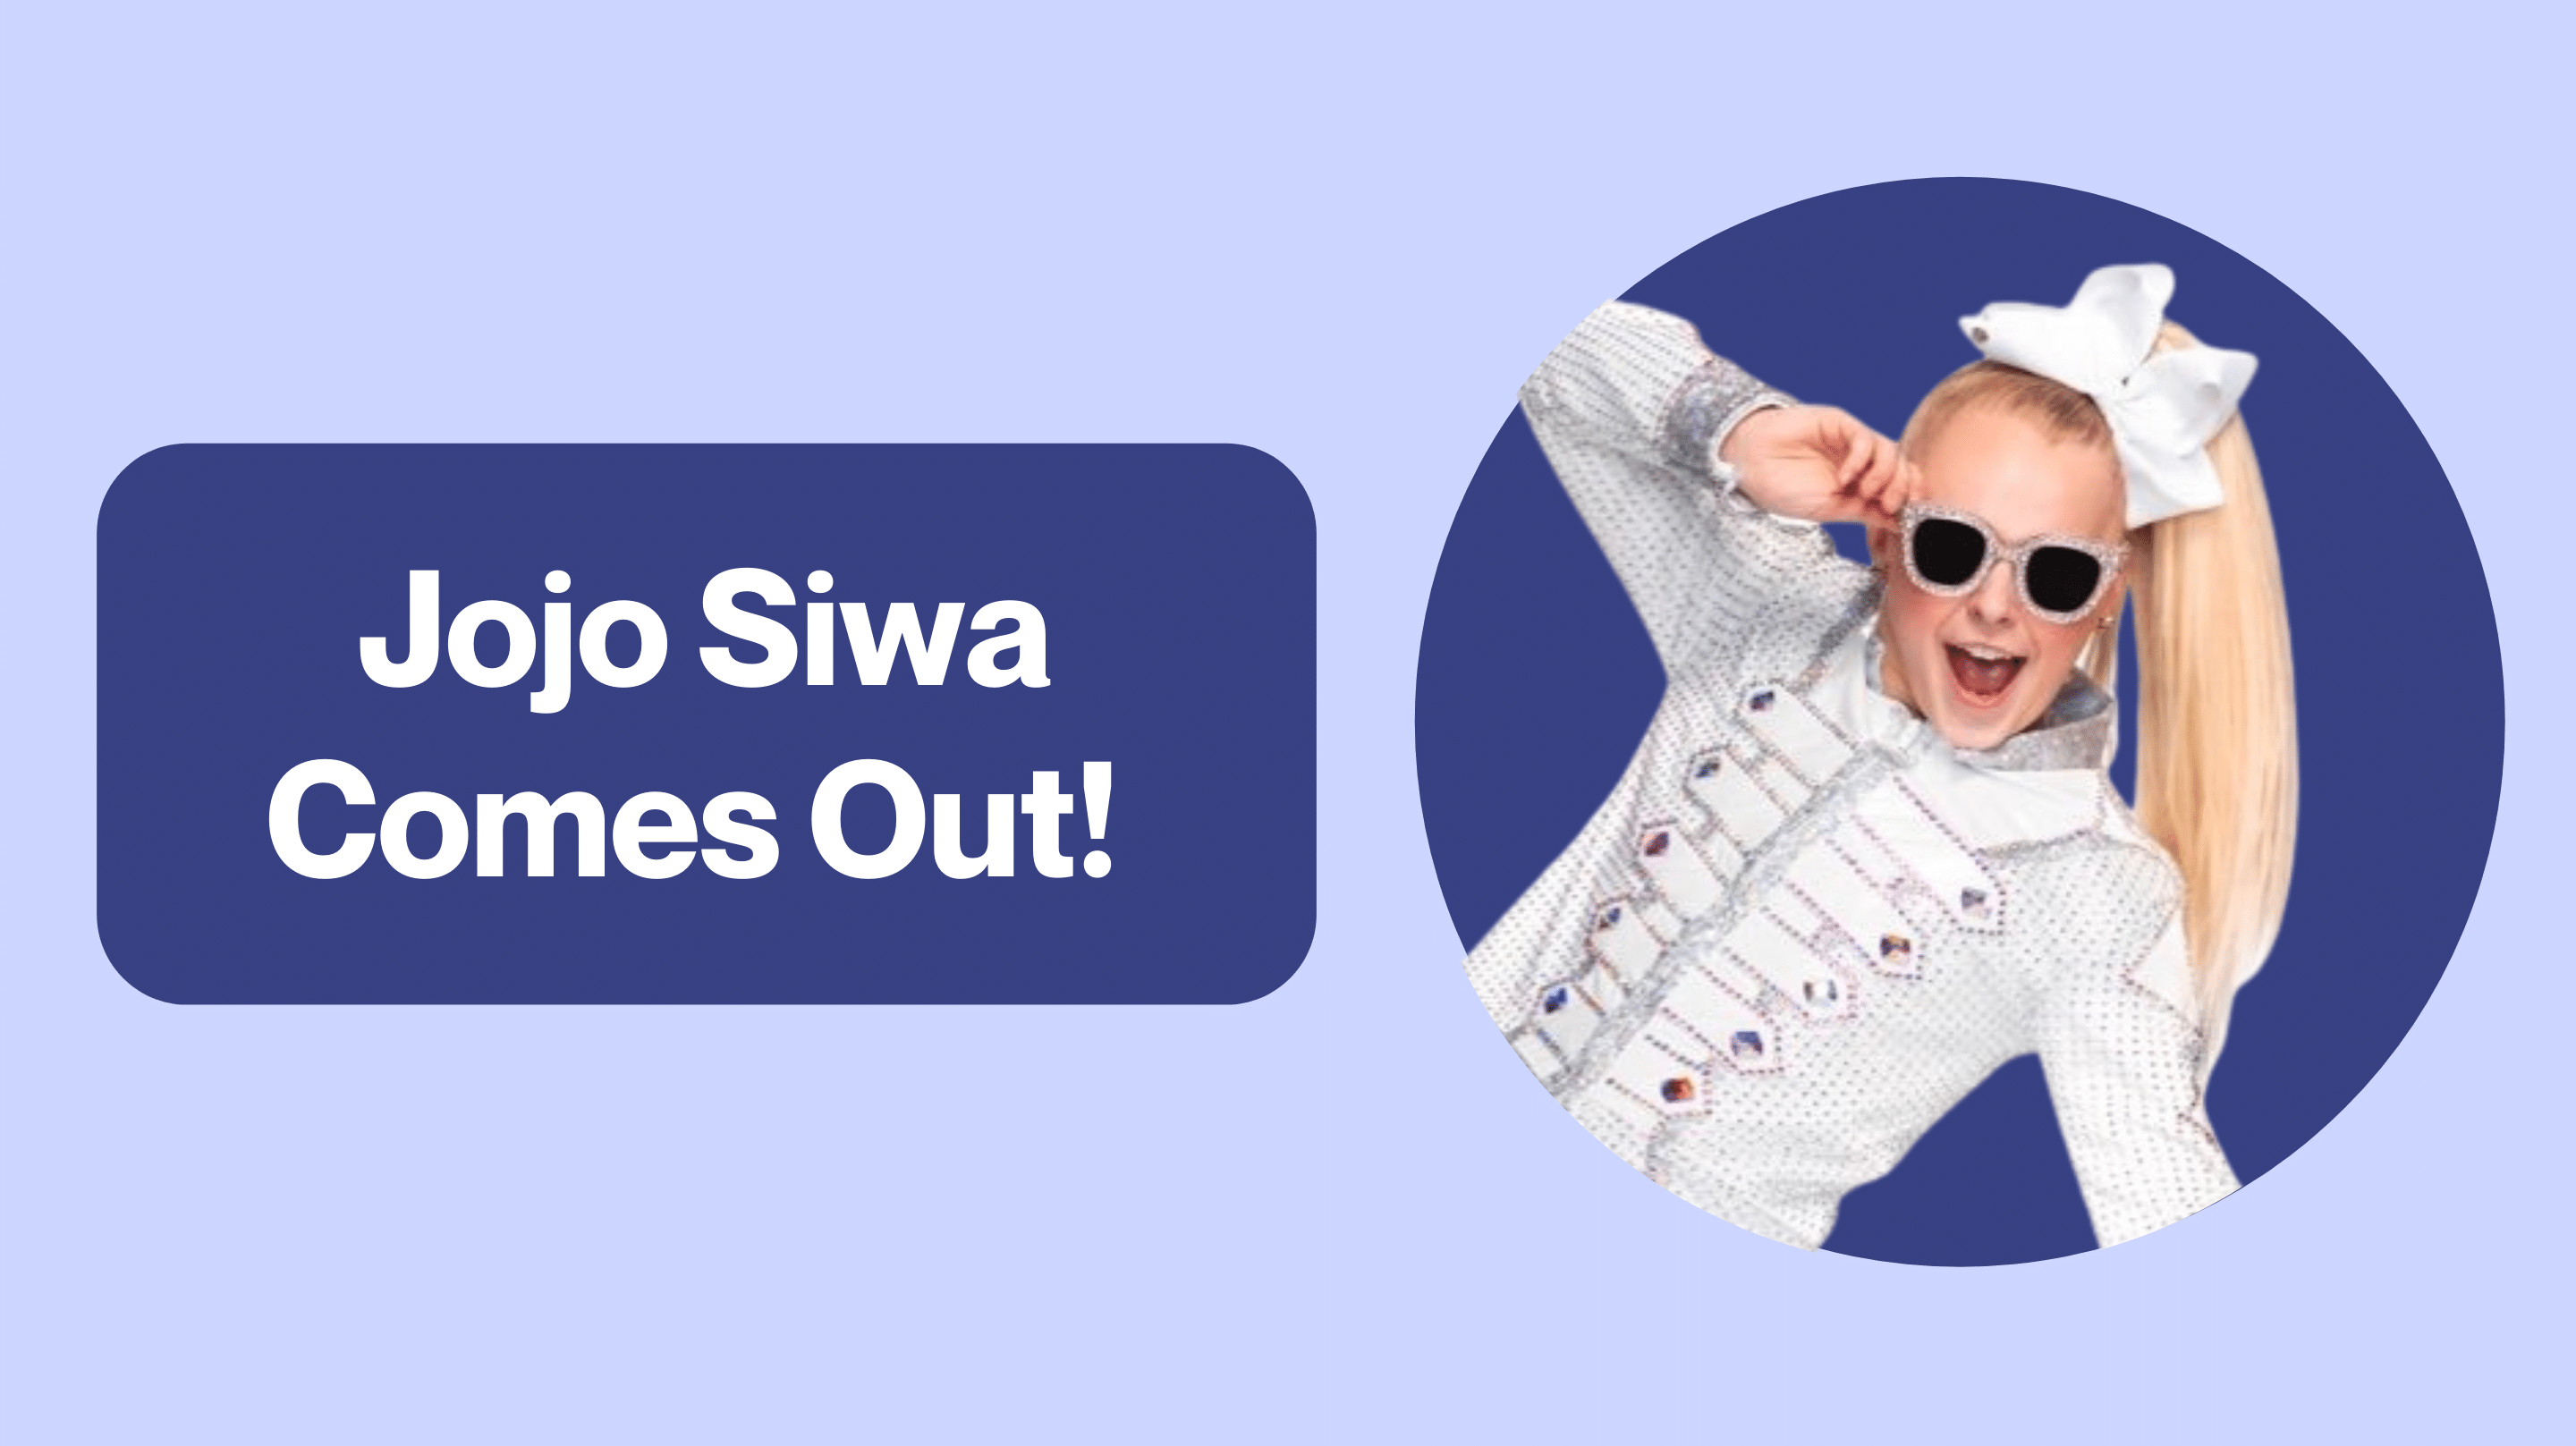 JoJo Siwa Comes Out!